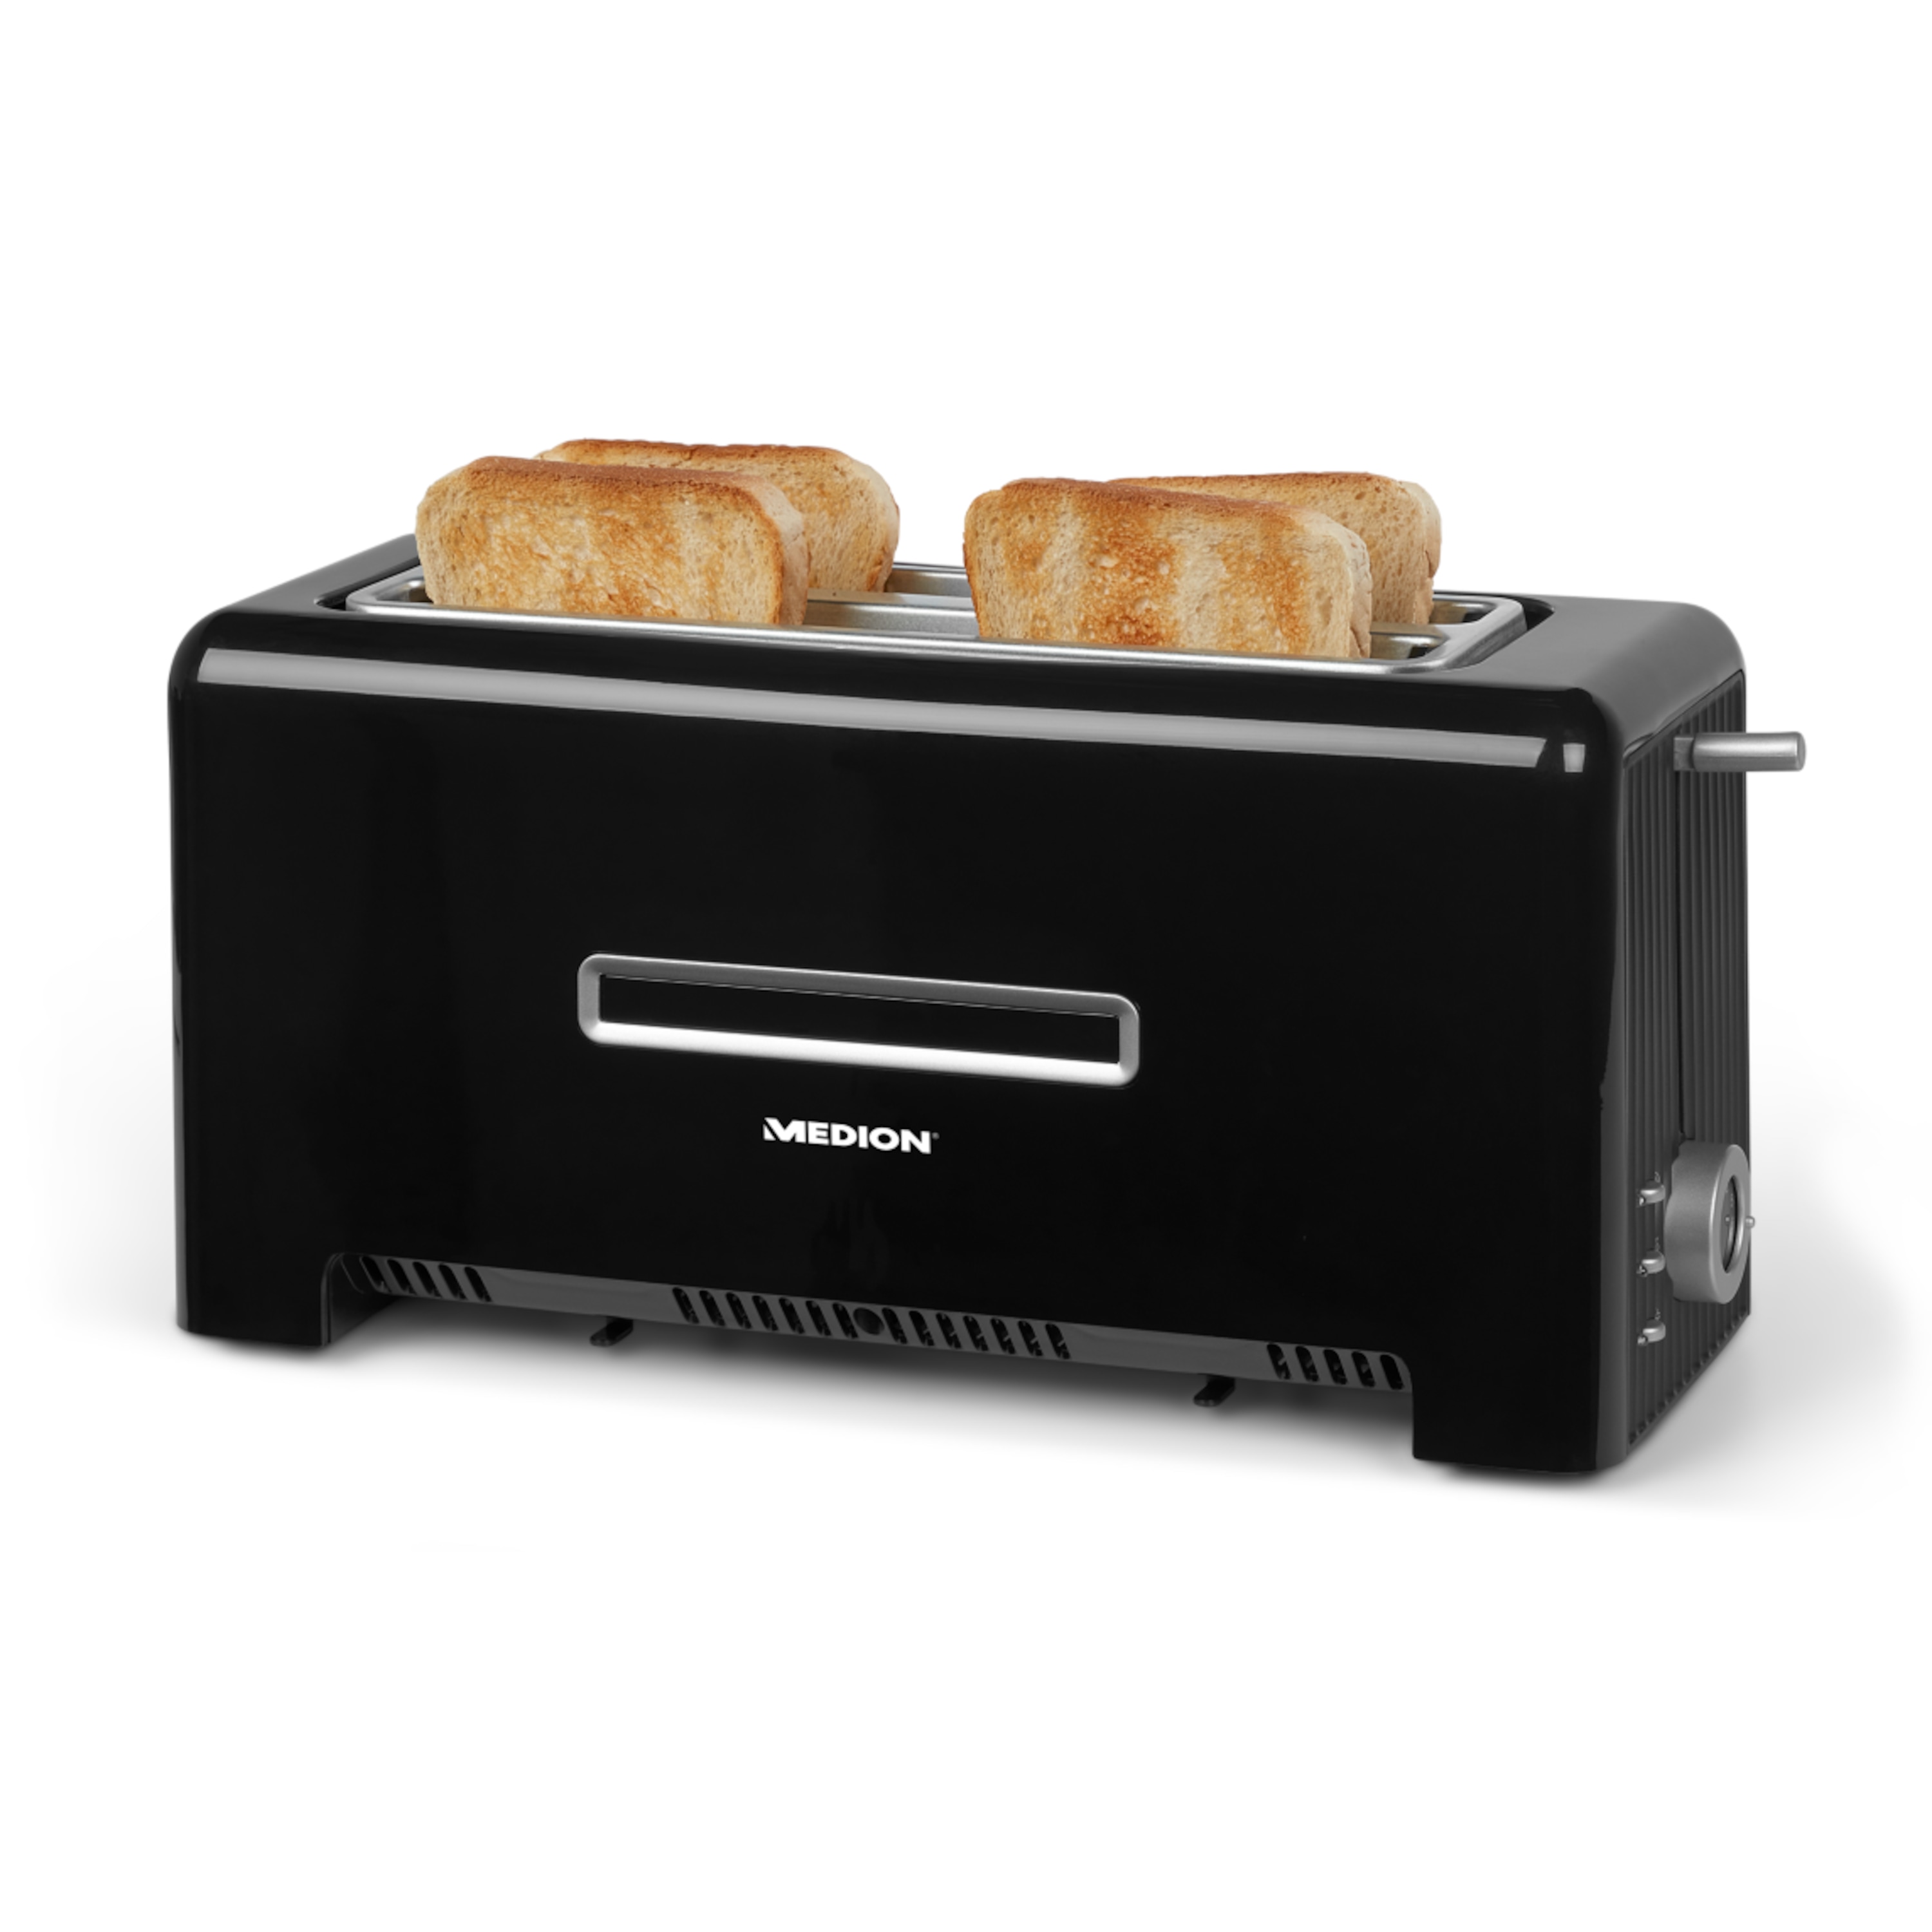 MEDION® Toaster MD 15709, 1.200 bis 1.400 Watt, zwei Langschlitze, Aufwärm-, Auftau- und Stopptaste, Bräunungsgrad-Regler